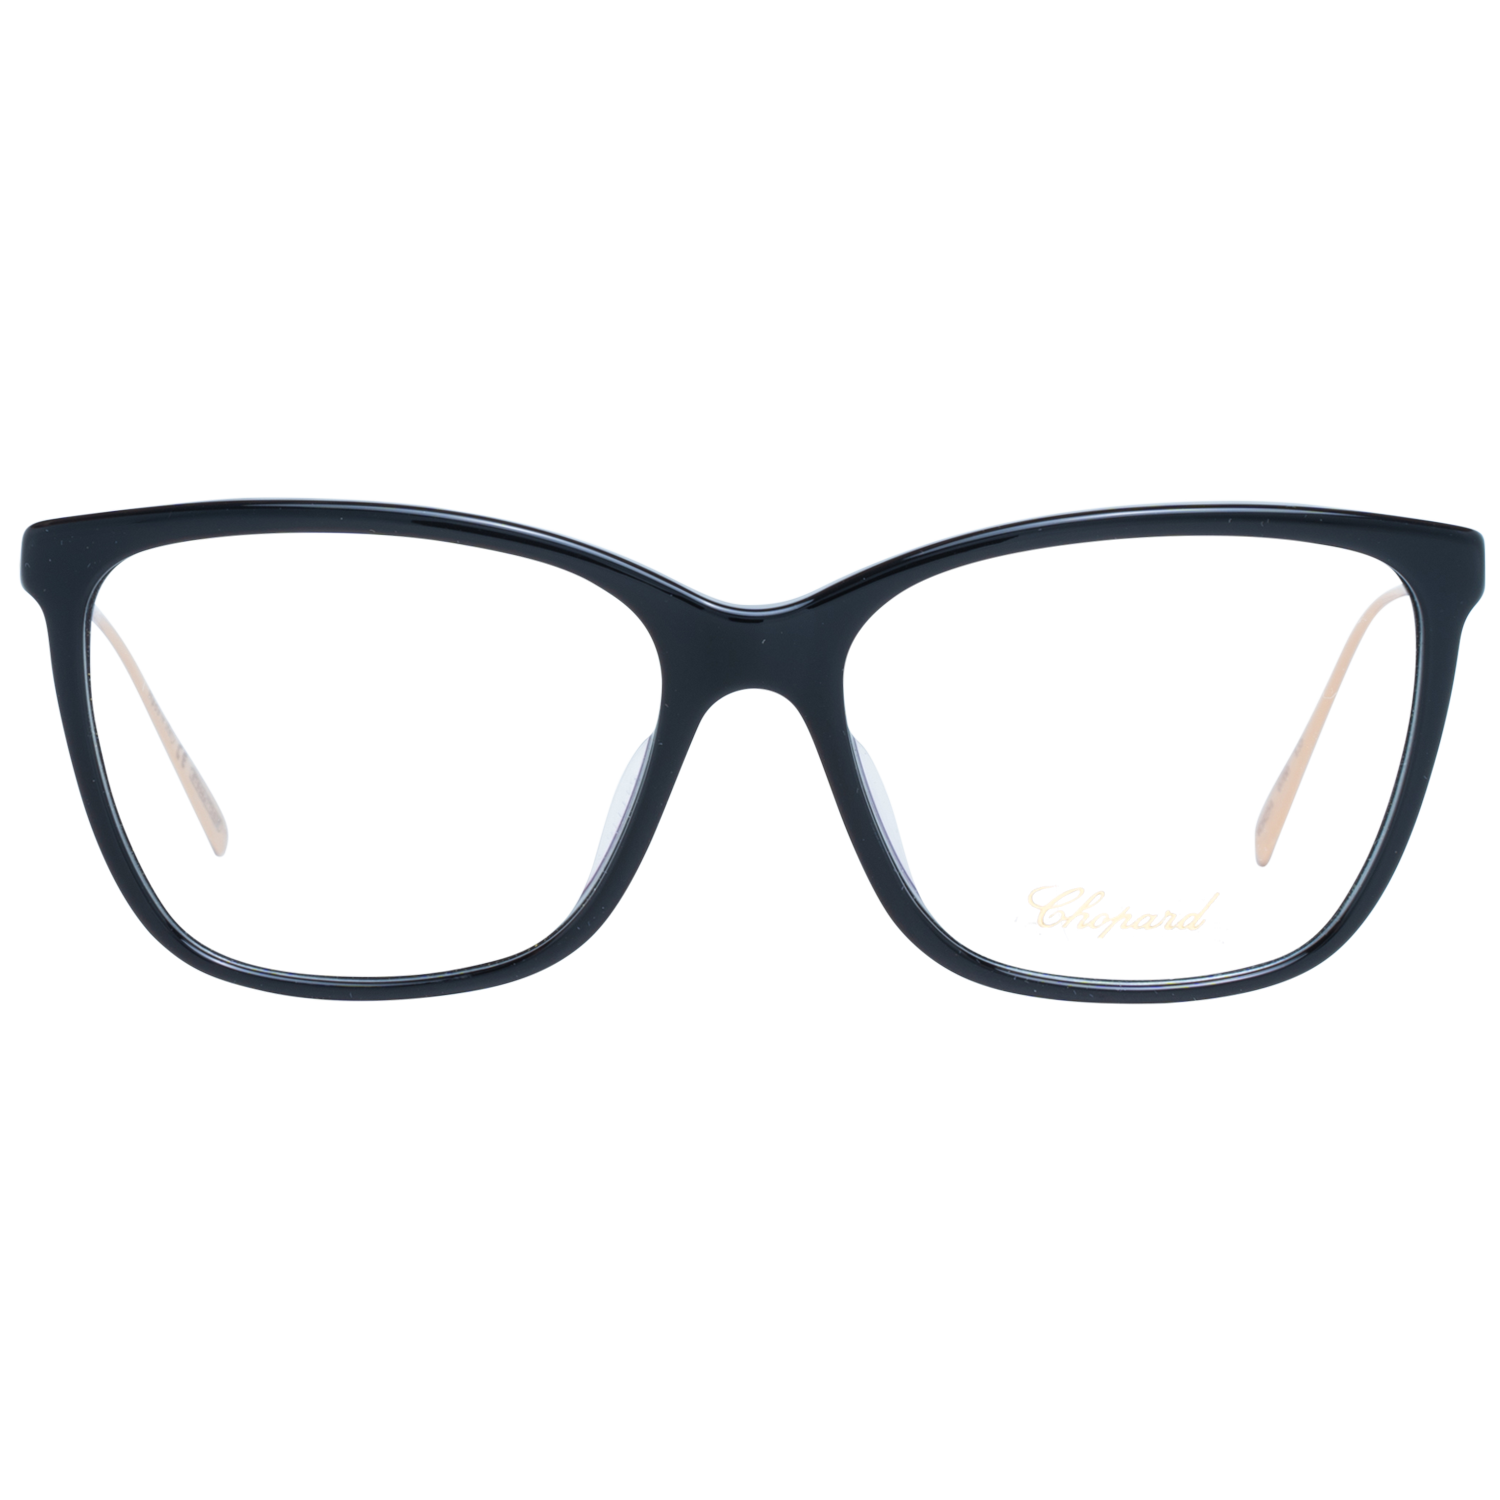 Chopard Frames Chopard Glasses Frames VCH254 0700 54mm Eyeglasses Eyewear UK USA Australia 